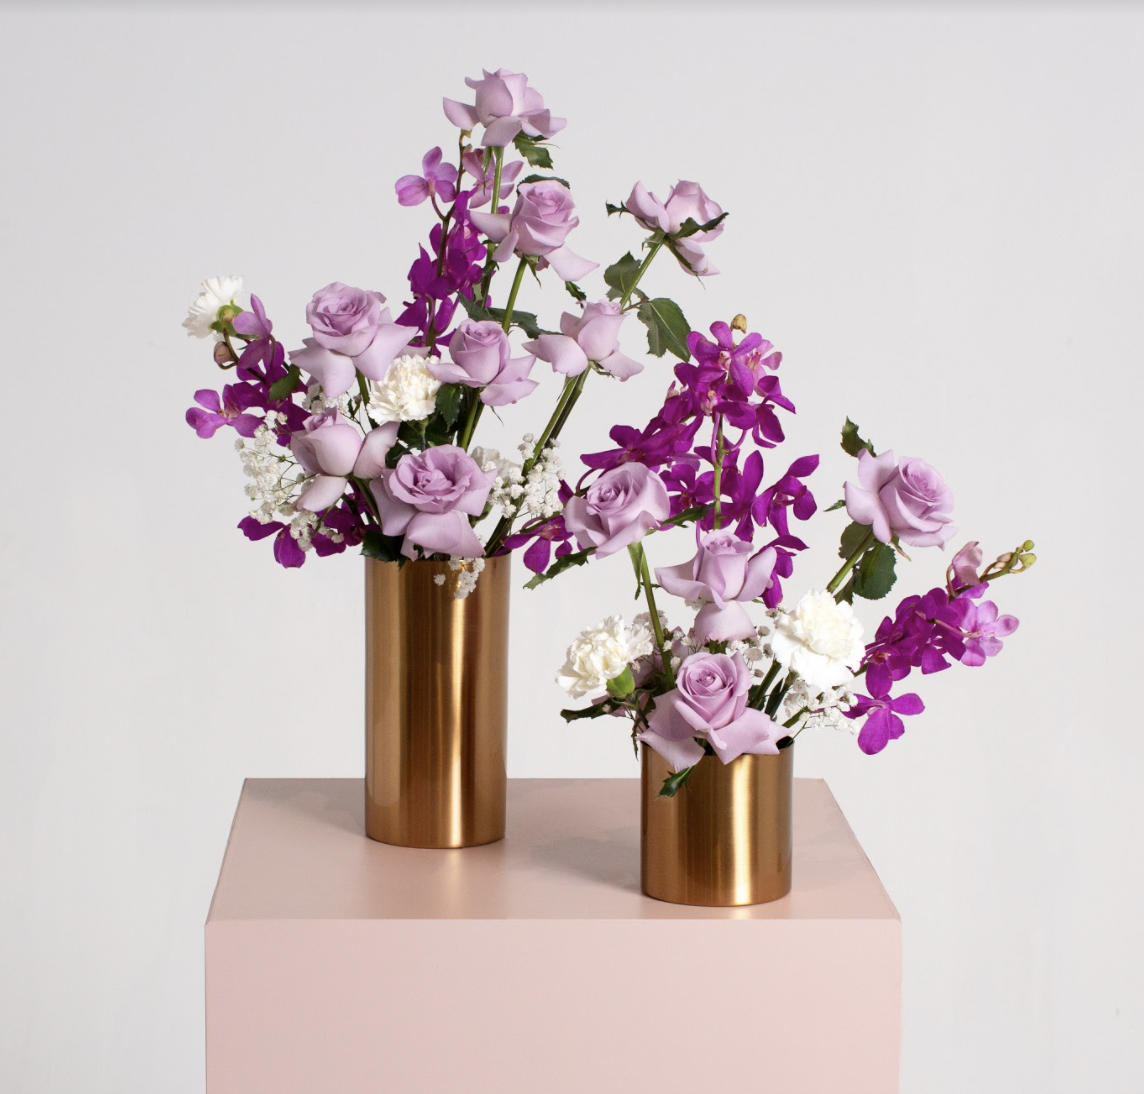 改用花瓶包裝更環保！10款+母親節花束推介：康乃馨以外鮮花、保鮮花花束